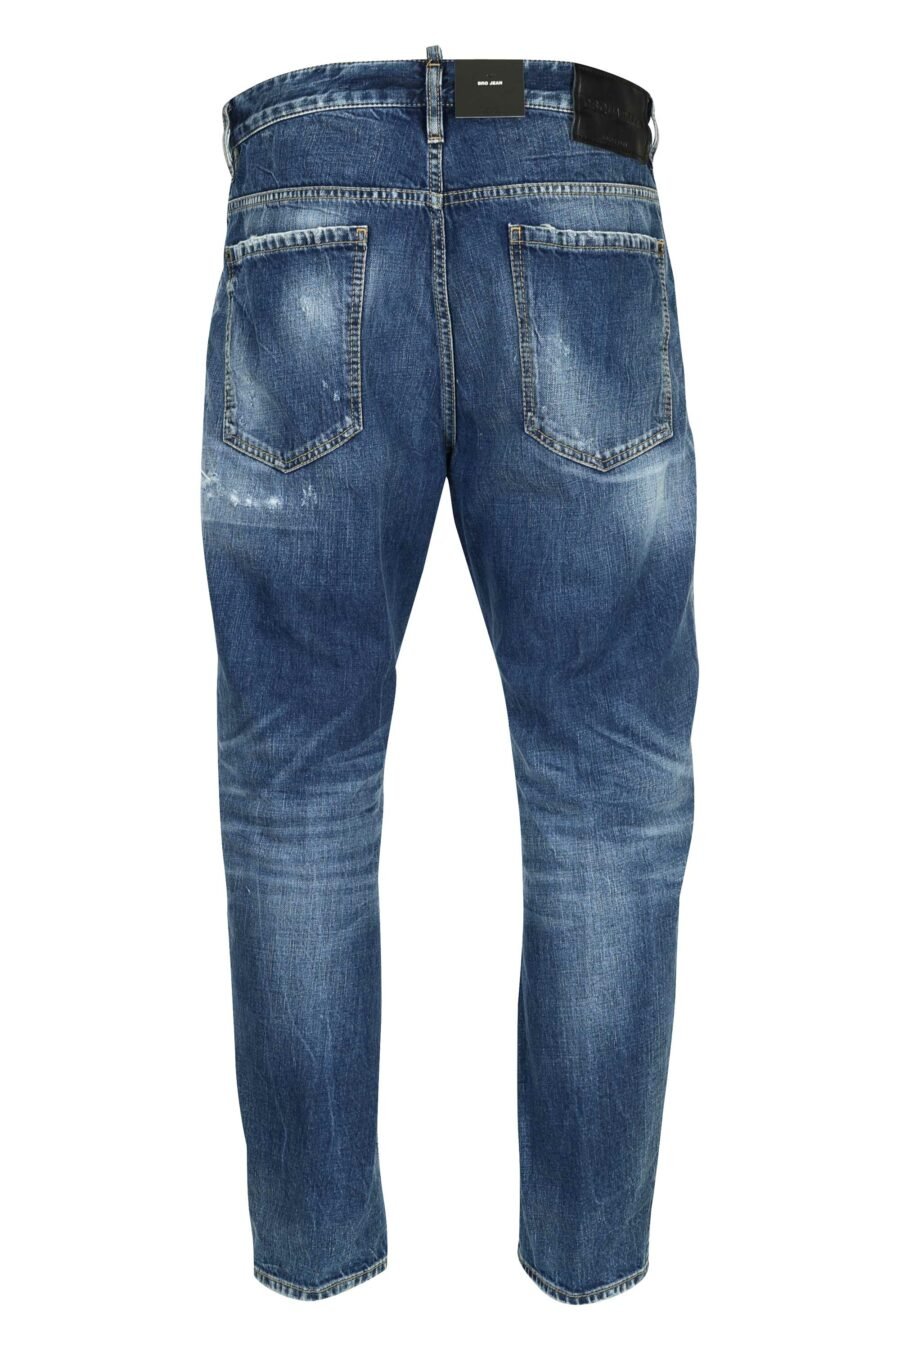 Pantalón vaquero azul "bro jeans" con logo "d2" - 8054148338572 2